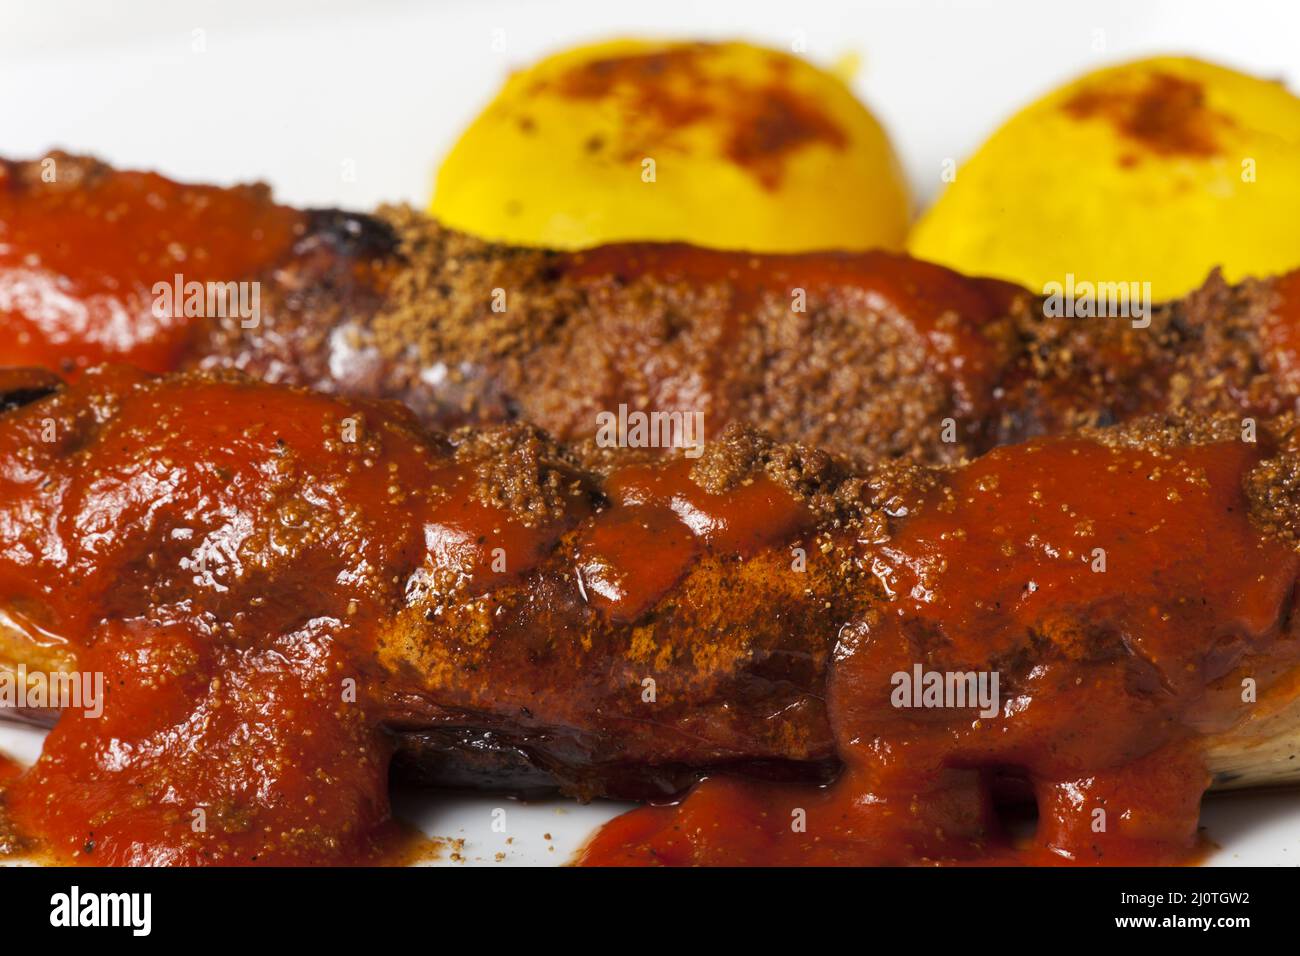 German curry sausage close up Stock Photo